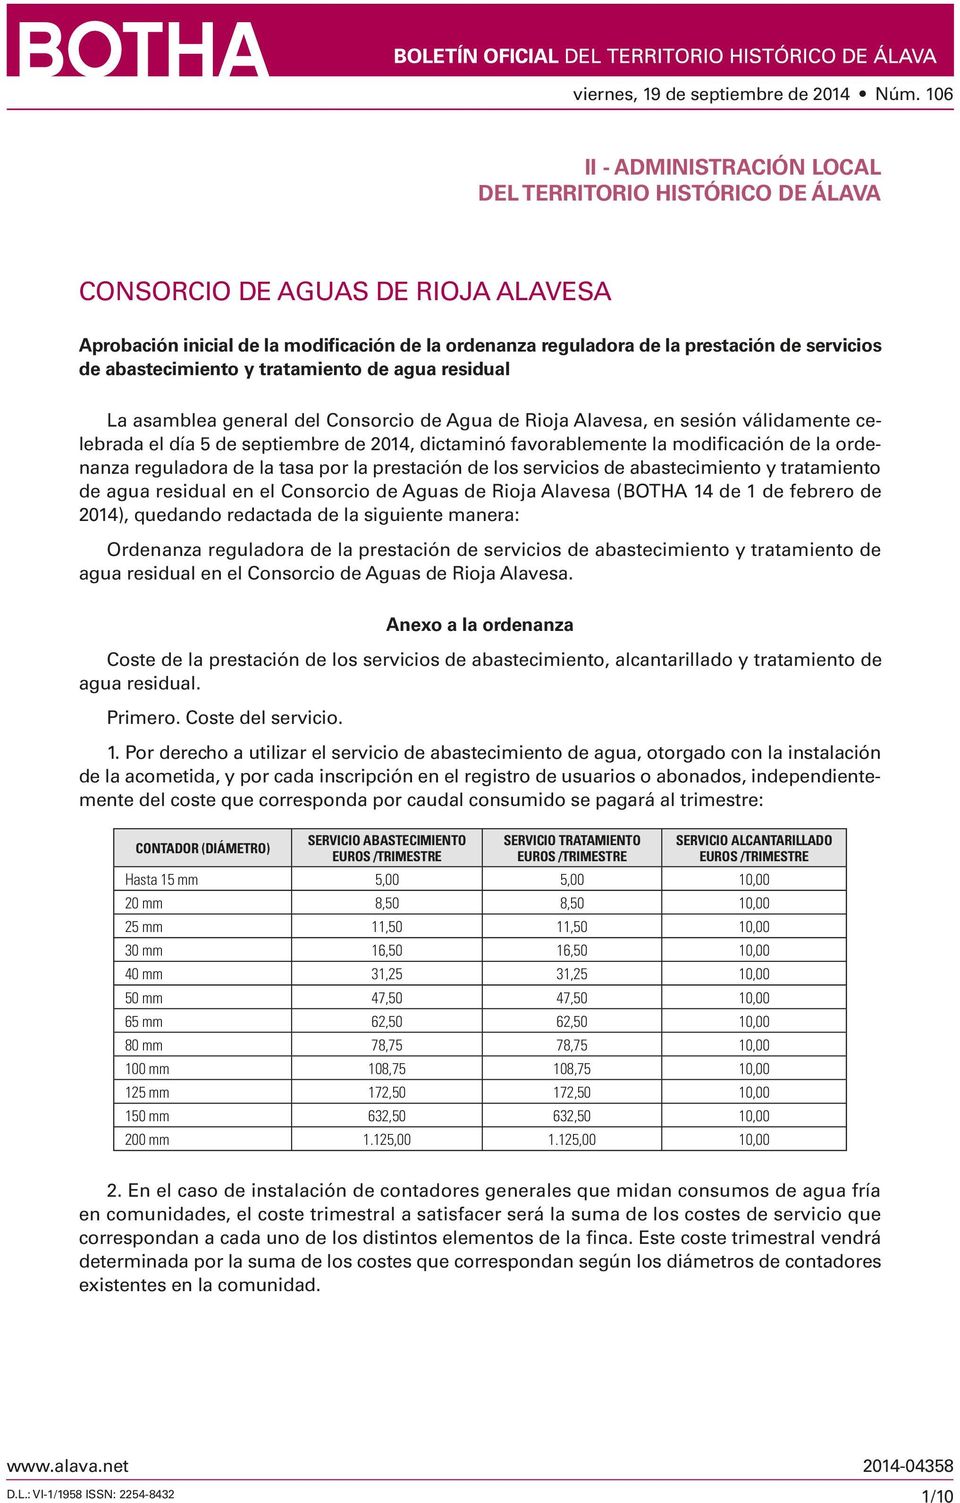 modificación de la ordenanza reguladora de la tasa por la prestación de los servicios de abastecimiento y tratamiento de agua residual en el Consorcio de Aguas de Rioja Alavesa (BOTHA 14 de 1 de